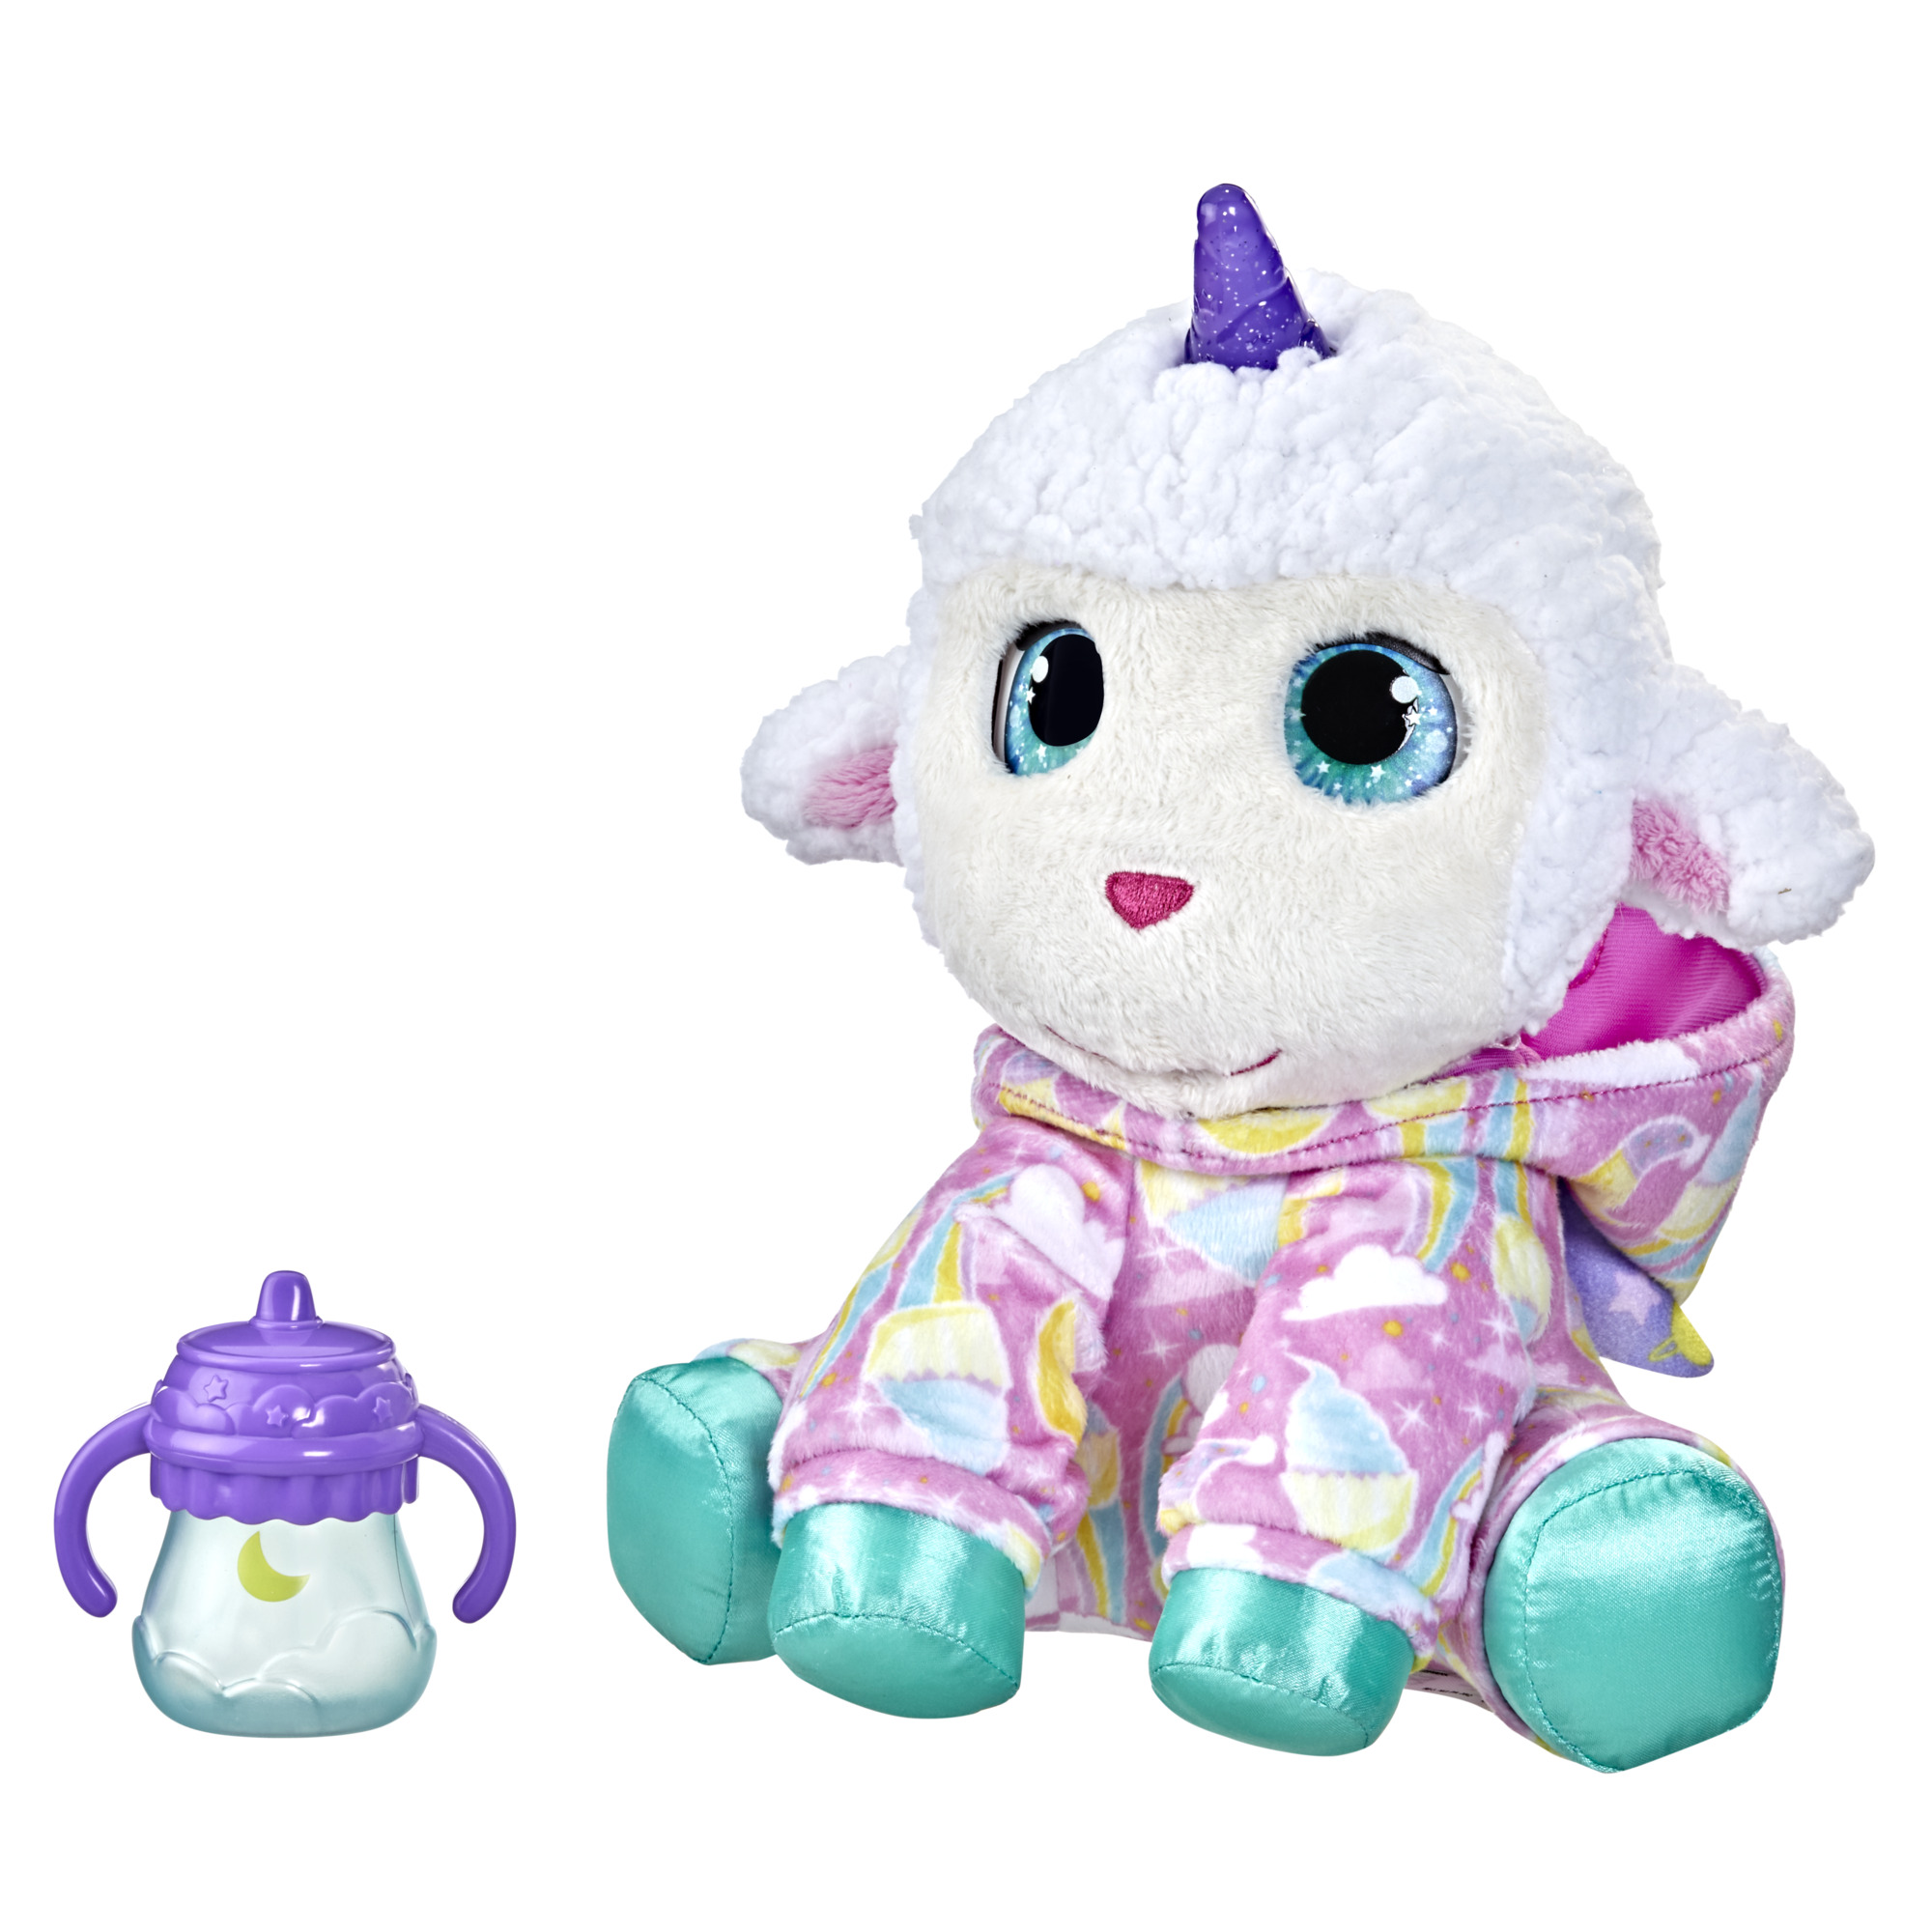 furReal Sweet Jammiecorn Lamb Interactive Plush Toy $9.85 + Free Shipping w/ Walmart+ or $35+